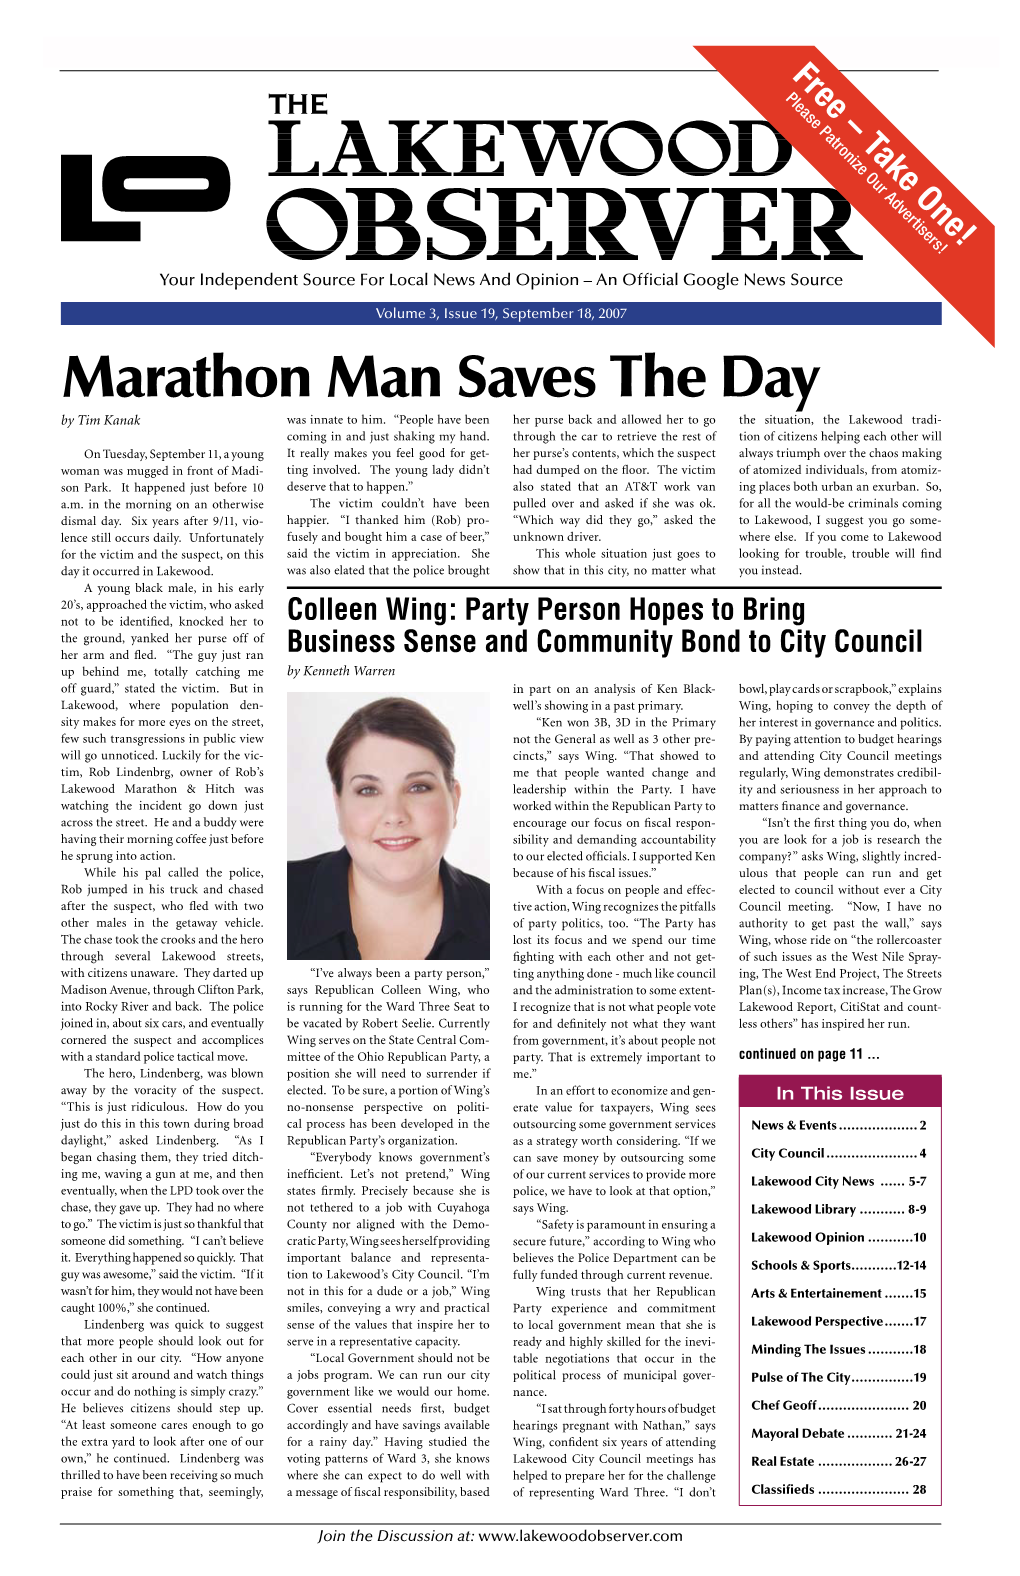 Marathon Man Saves the Day by Tim Kanak Was Innate to Him